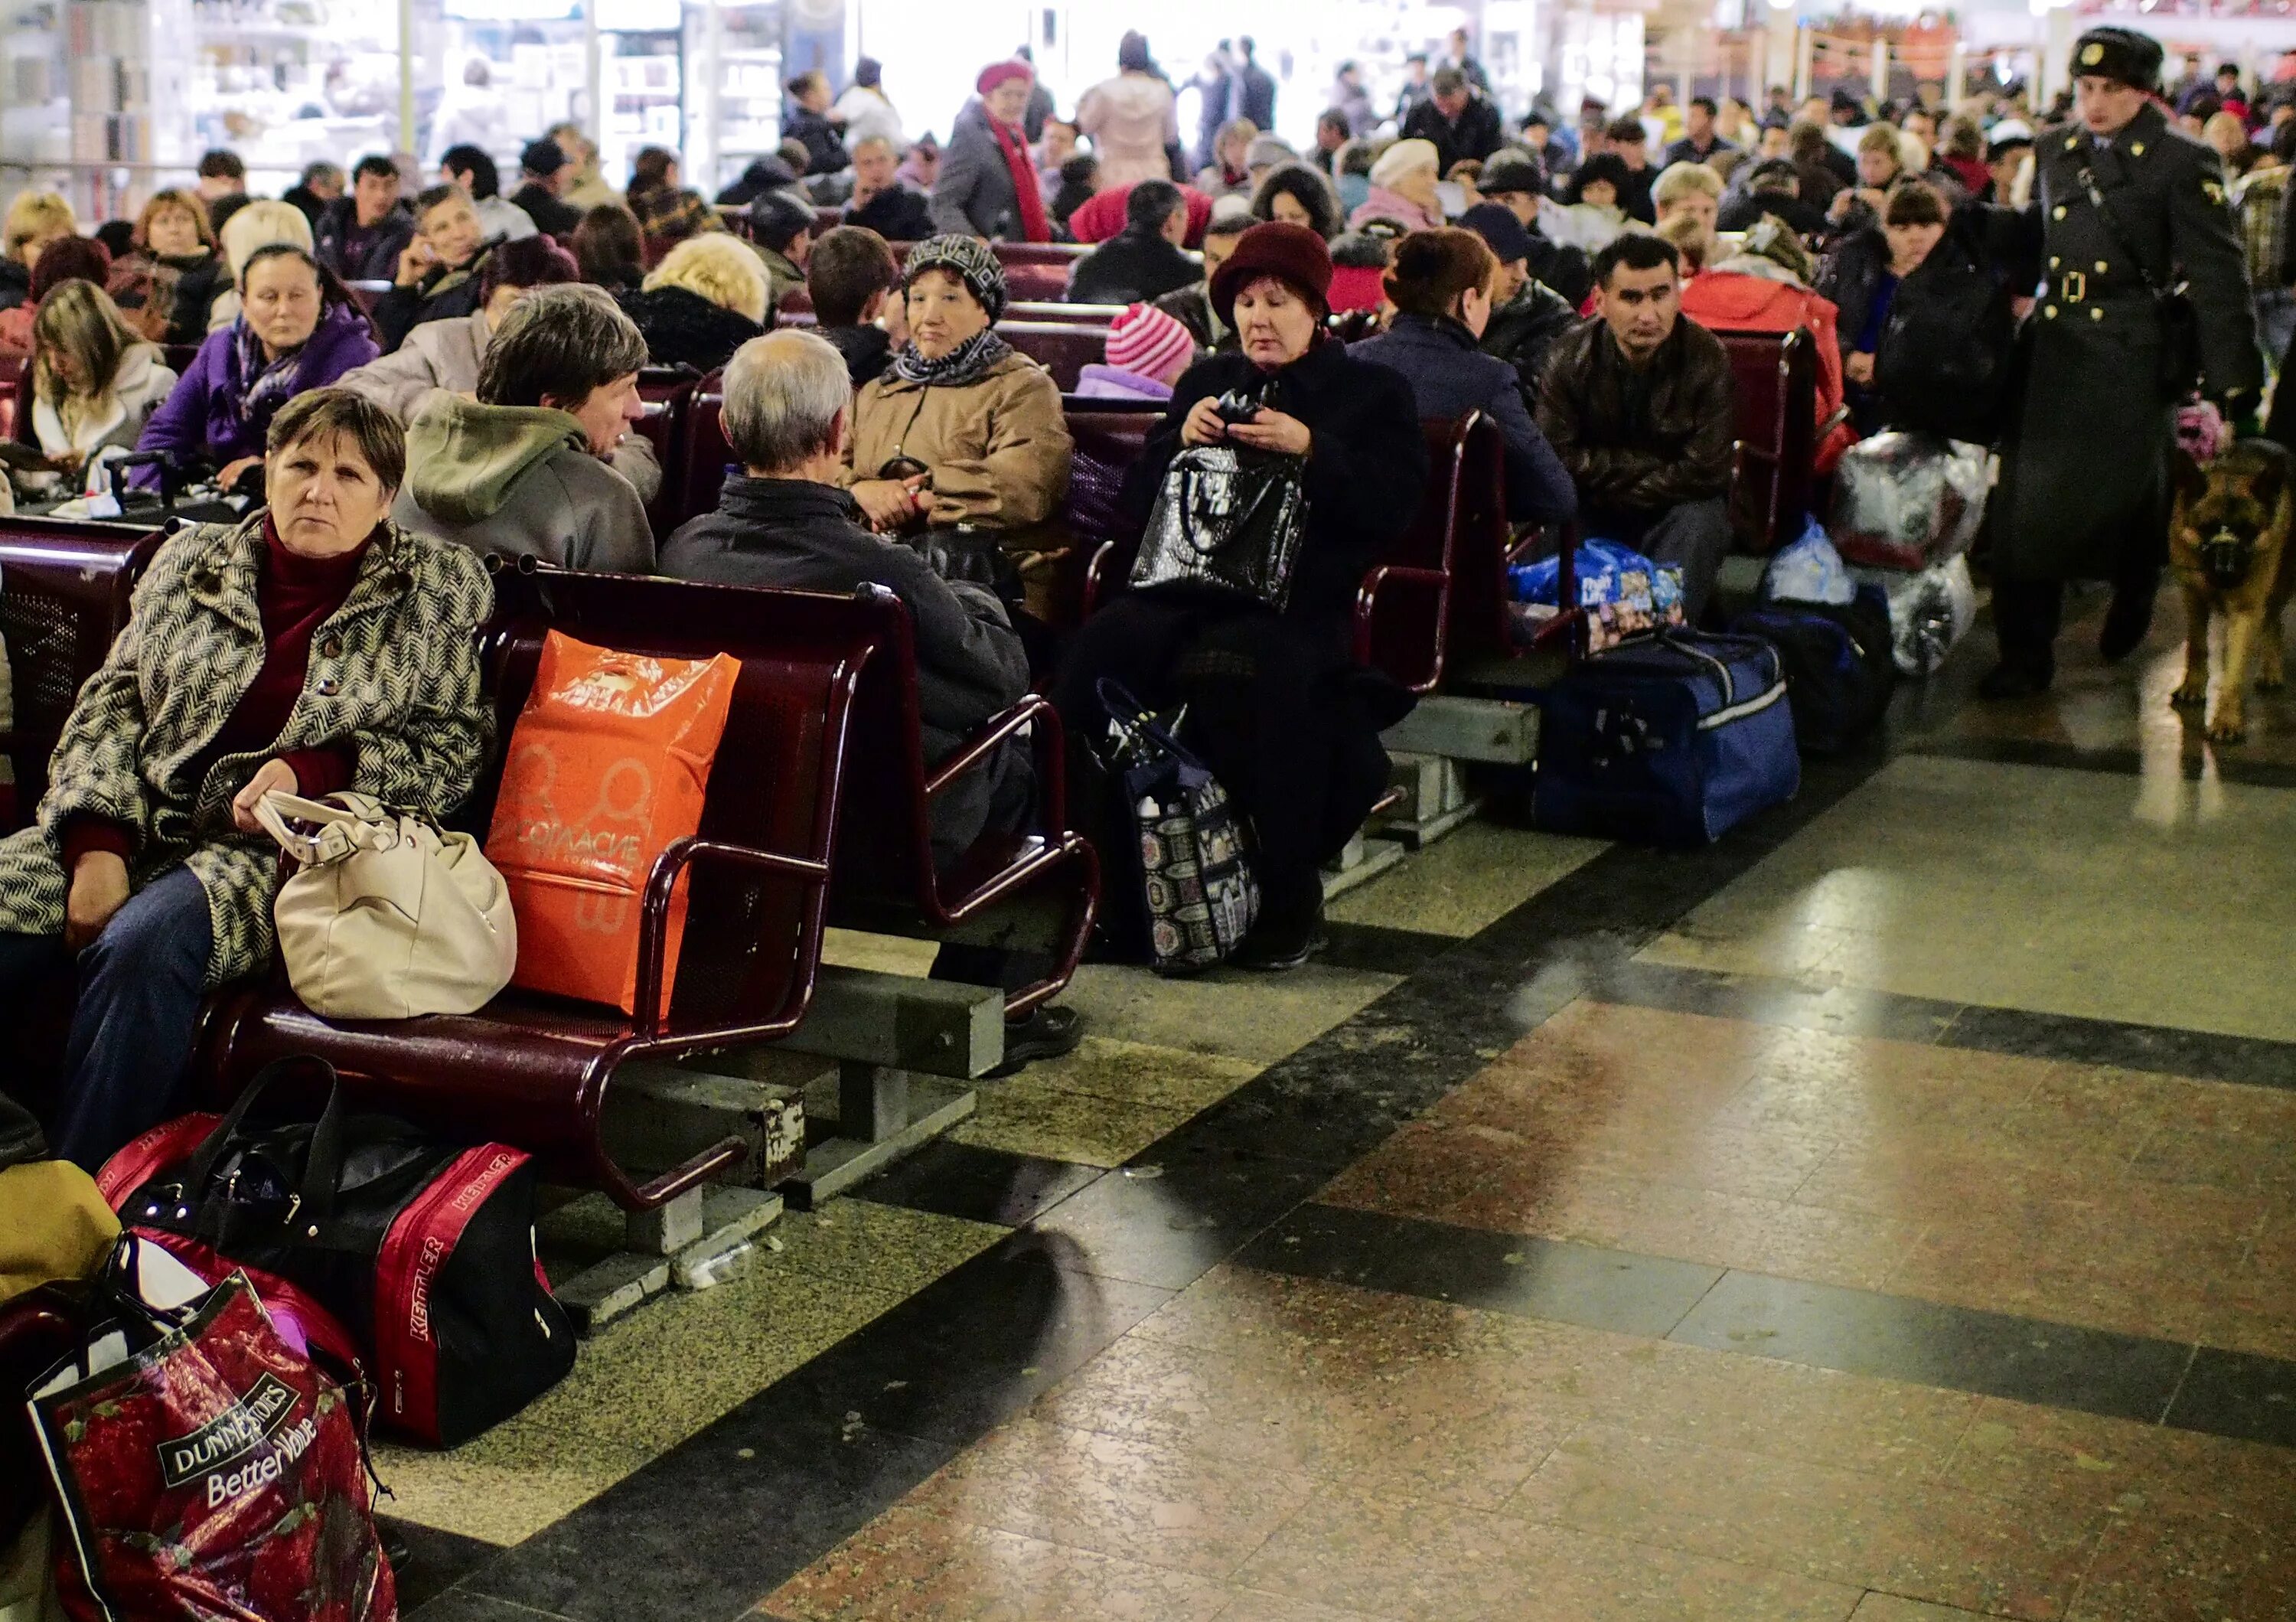 Развлечения на вокзалах. Казанский вокзал зал ожидания. Люди на вокзале. Пассажиры в зале ожидания. Залы ожидания на вокзале.